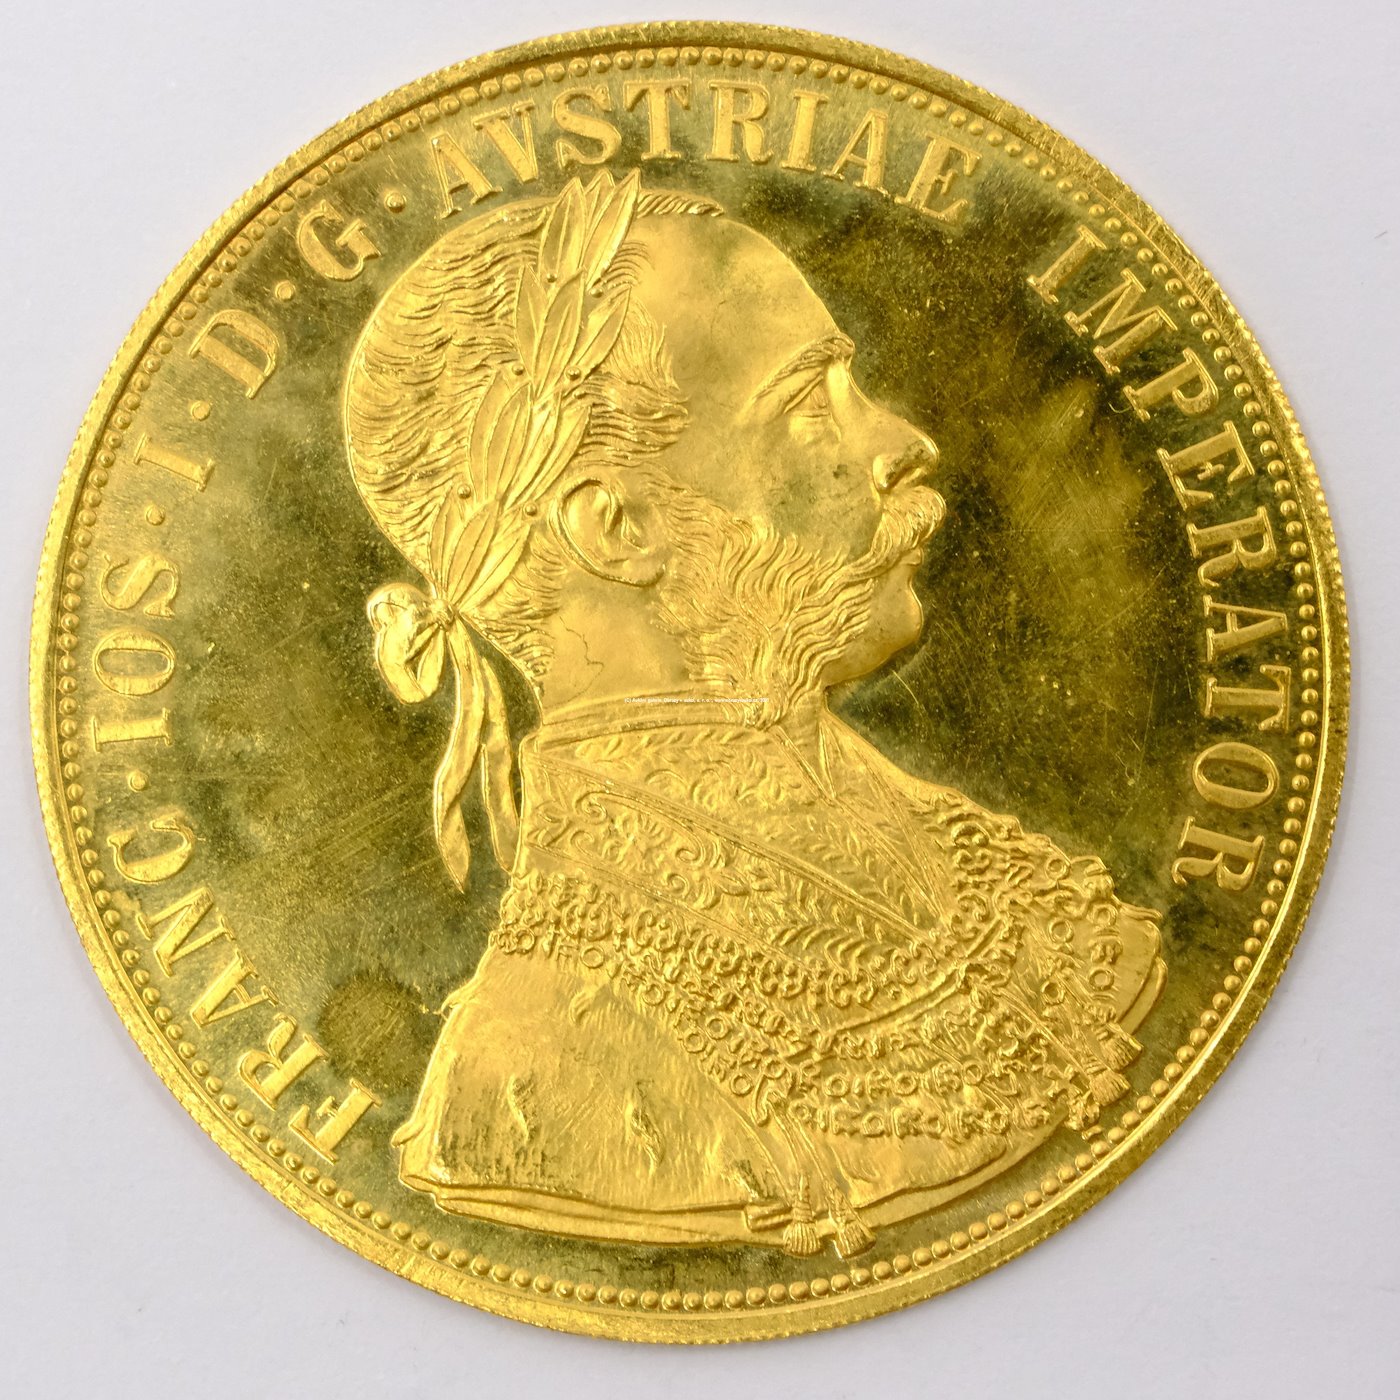 .. - Rakousko Uhersko zlatý 4 dukát 1915 pokračující ražba. Zlato 986/1000, hrubá hmotnost mince 13,964g